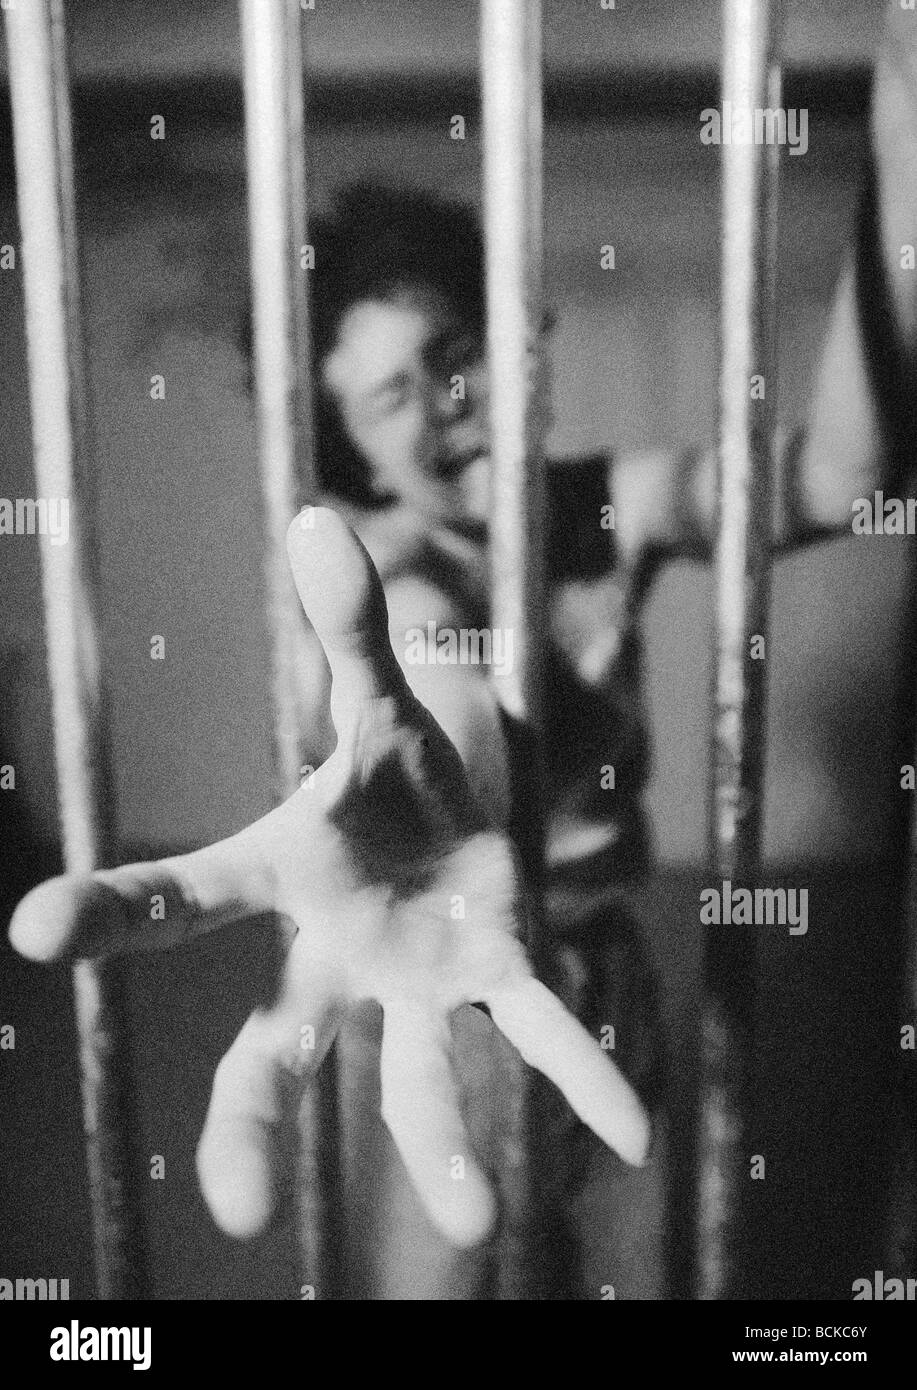 Mujer detrás de los barrotes de la cárcel llegando a mano a través de bares, B&W Foto de stock